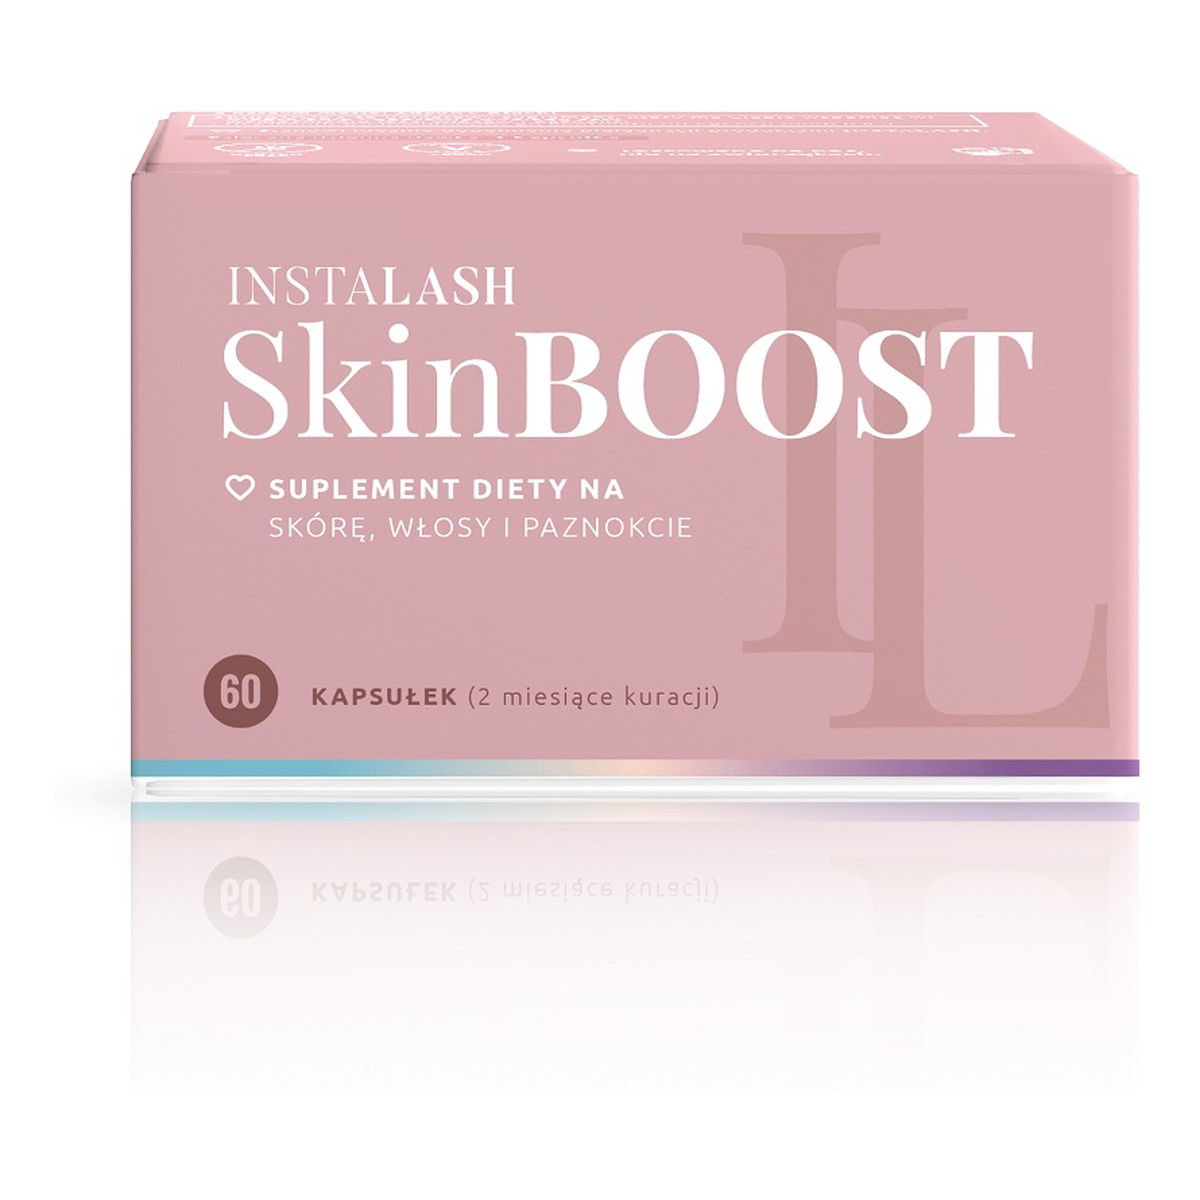 Instalash SkinBoost Suplement diety na skórę włosy rzęsy i paznokcie 60 kapsułek